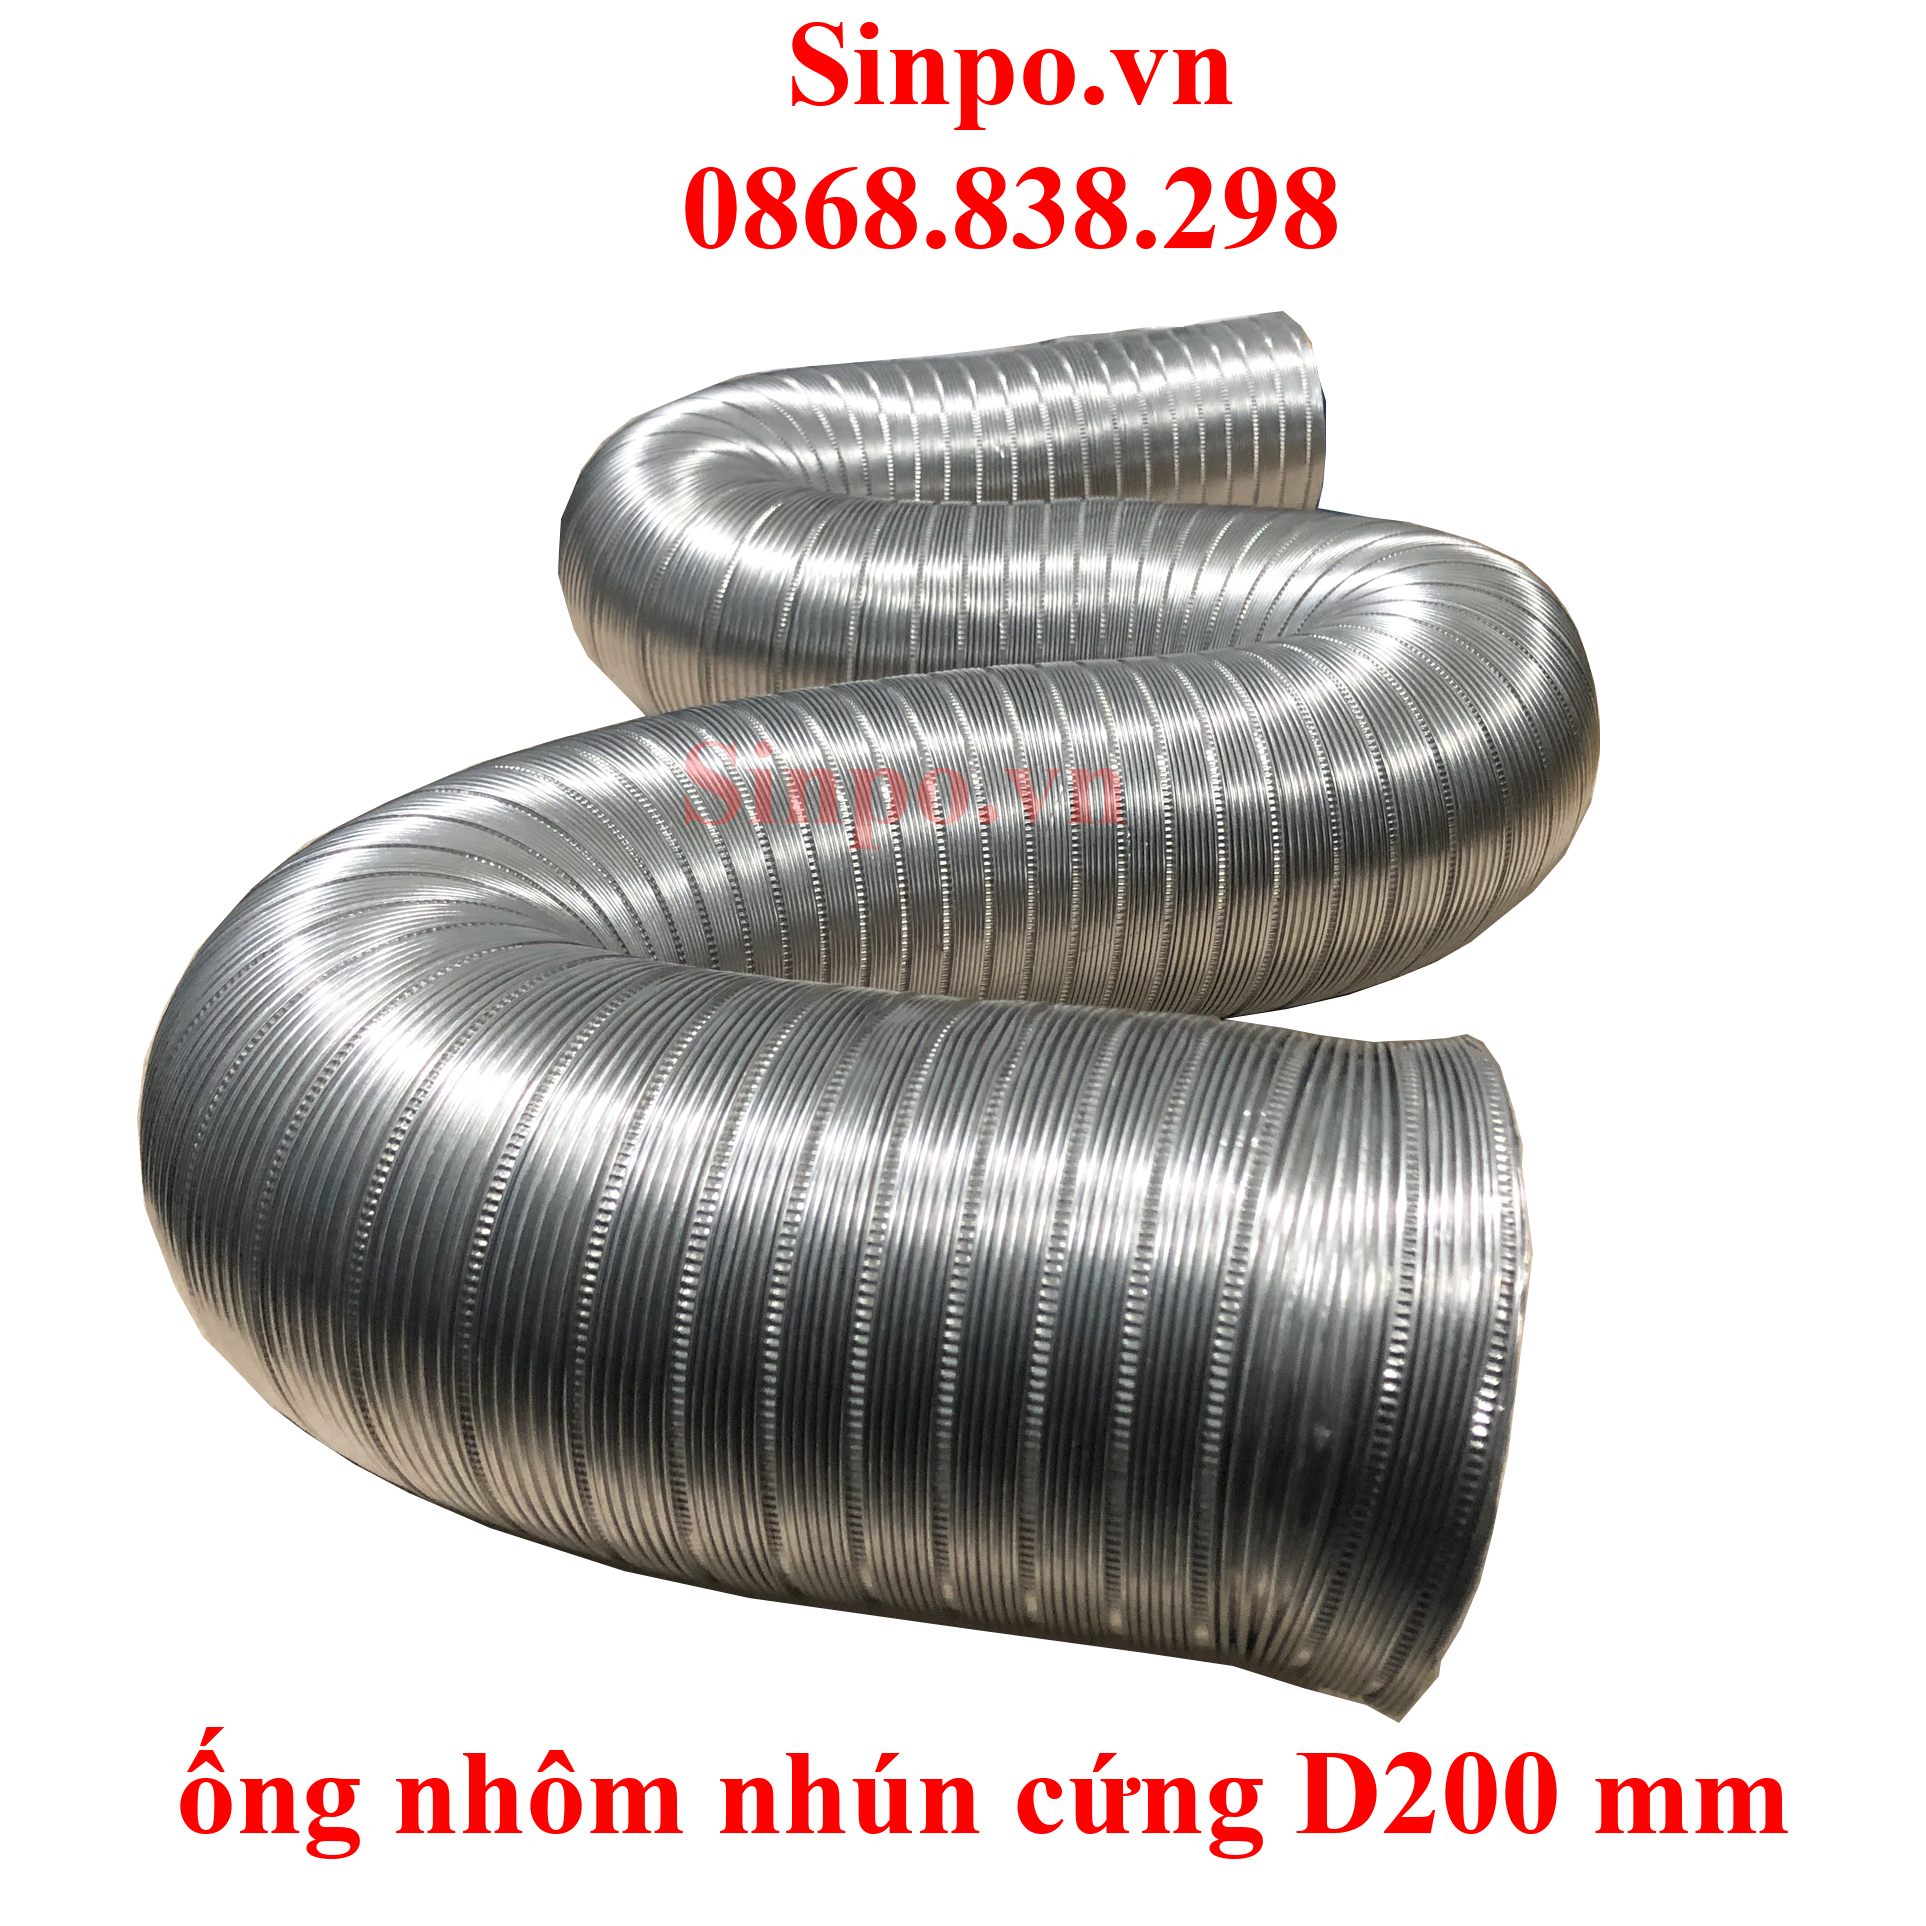 Địa chỉ mua ống nhôm nhún cứng D200 mm tại Hà Nội